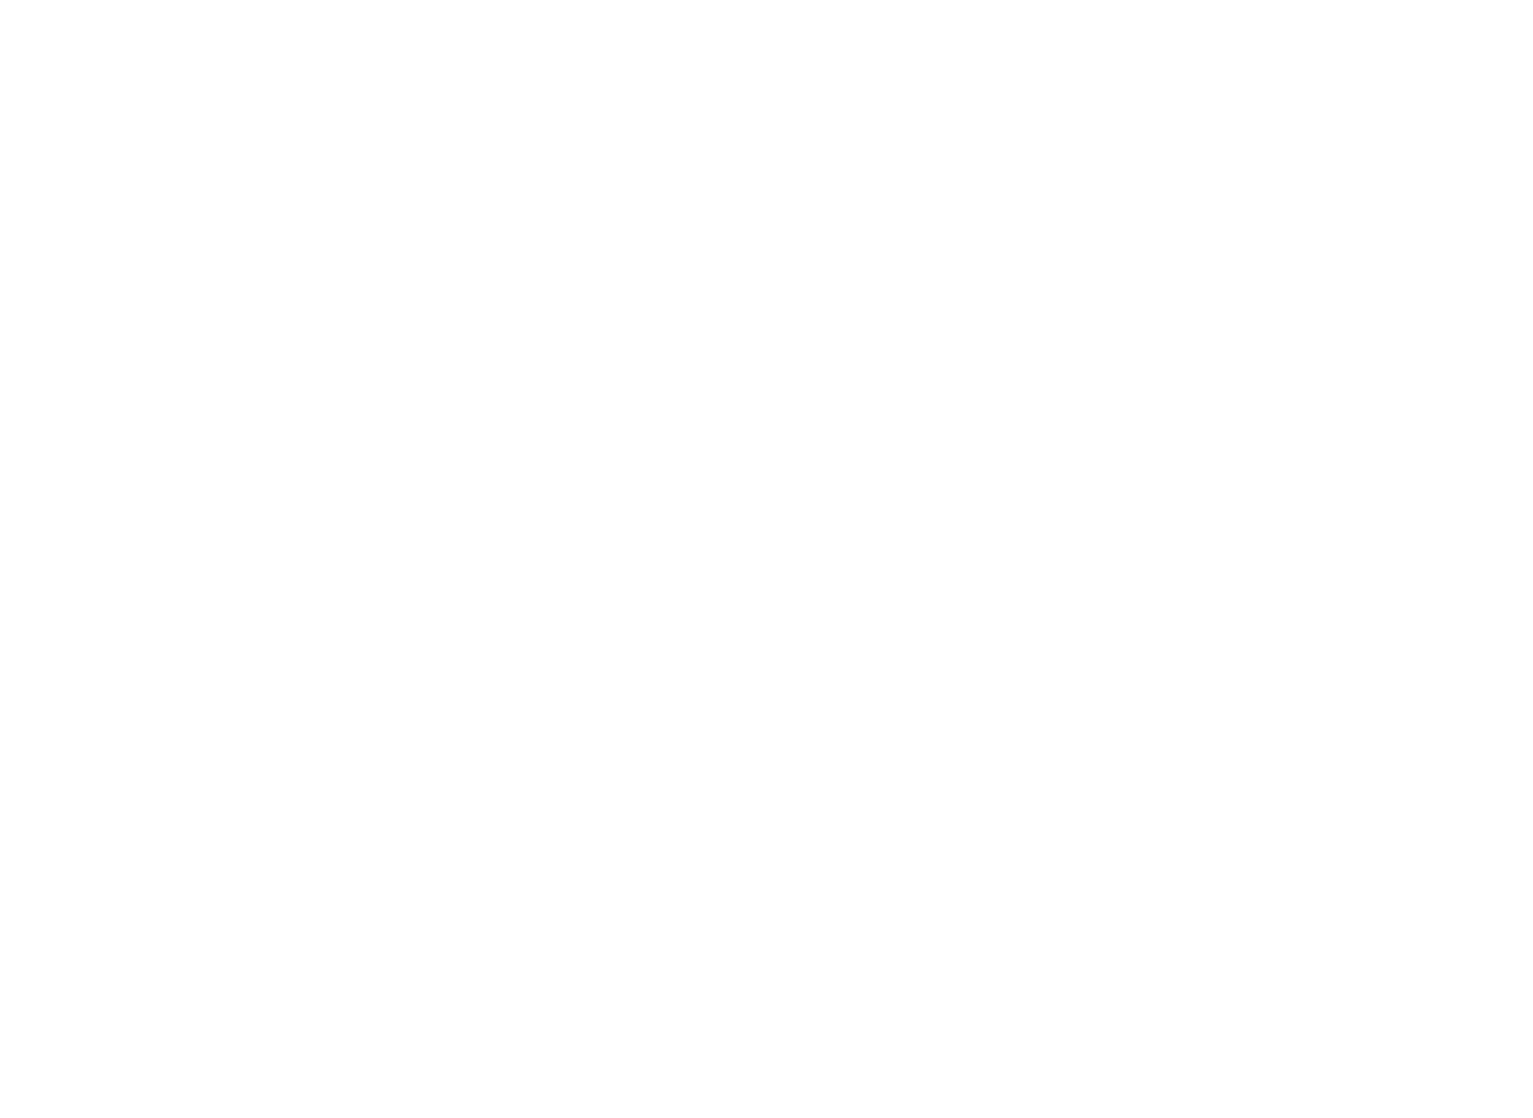 Iguatemi logo pour fonds sombres (PNG transparent)